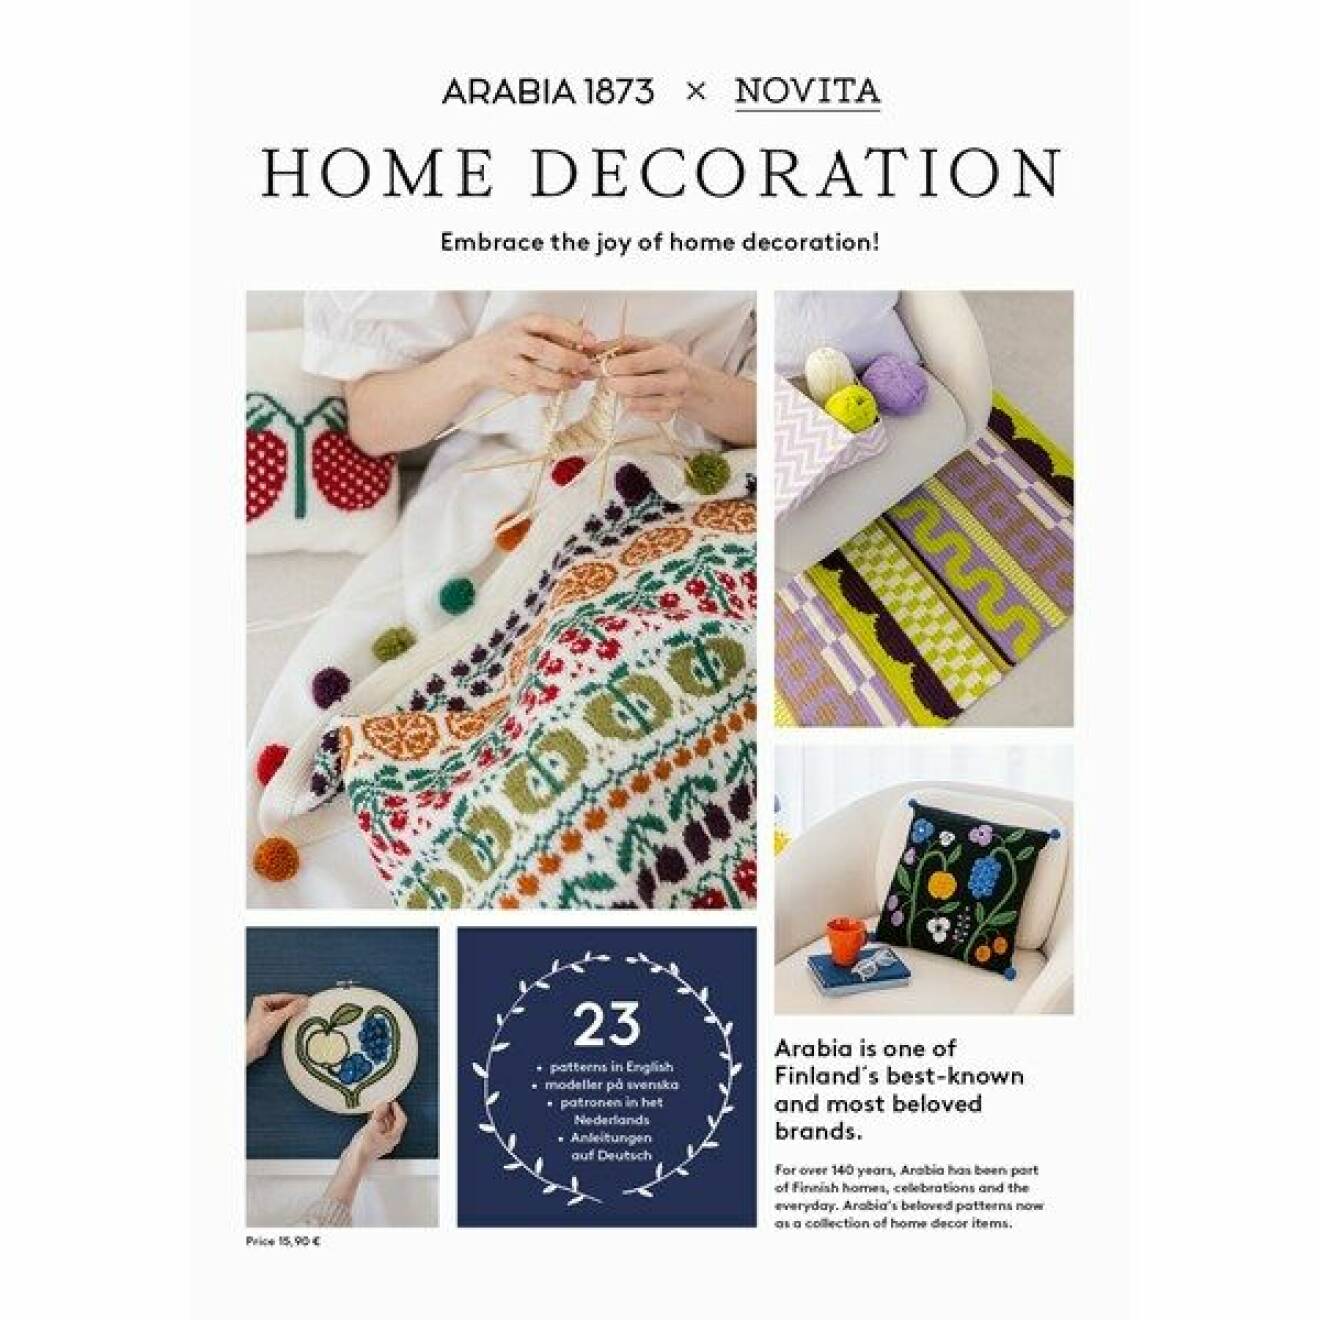 Omslaget för magasinet Home Decoration av Arabia och Novita.